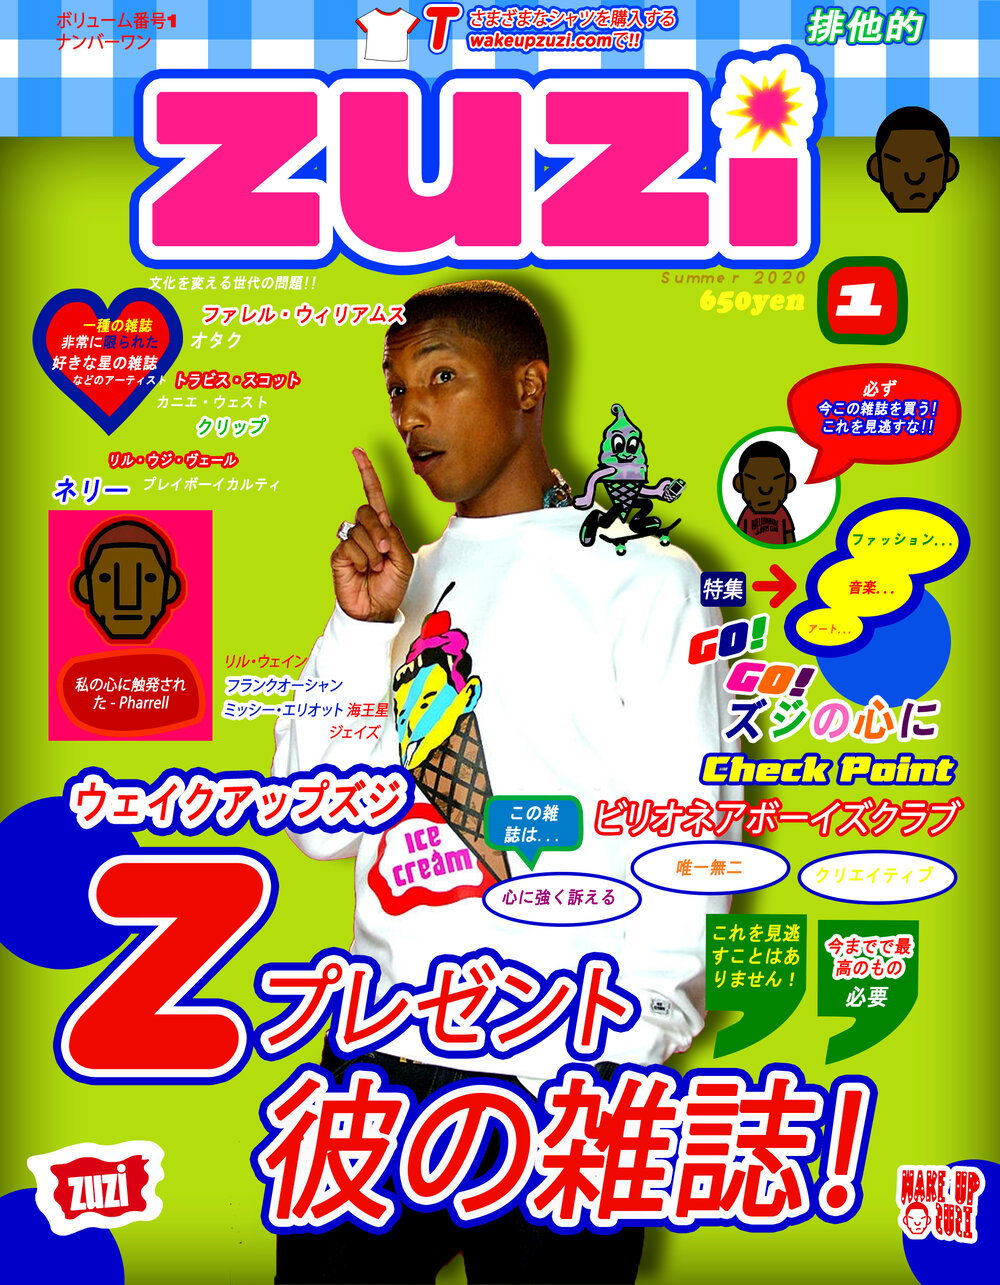 zuzi-japanese cover 2.jpg